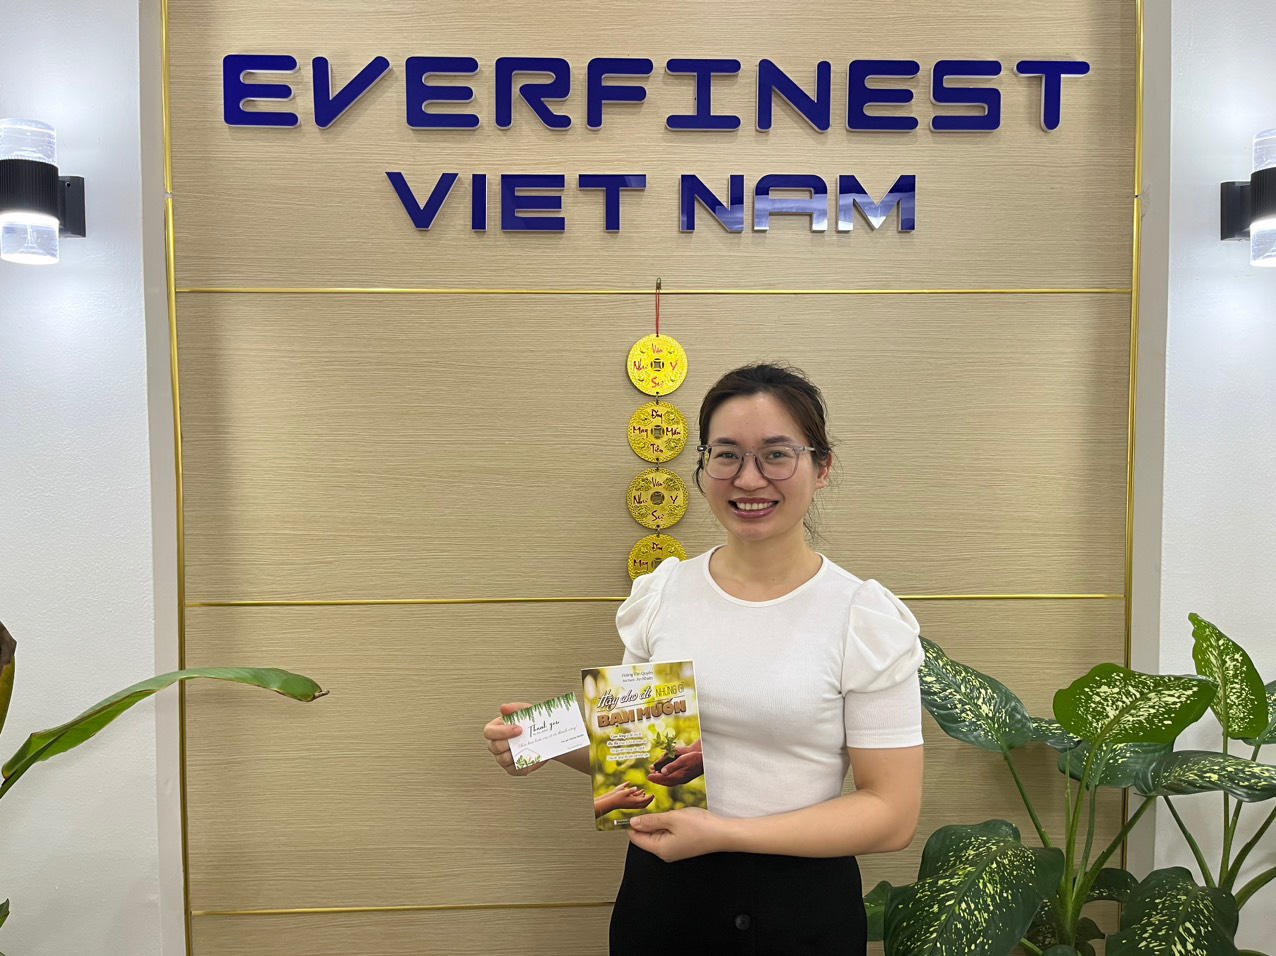 Tâm sự cựu sinh viên vui tính “đa-zi-năng” Hoàng Văn Quyền - Giám đốc công ty cổ phần An Phú Việt